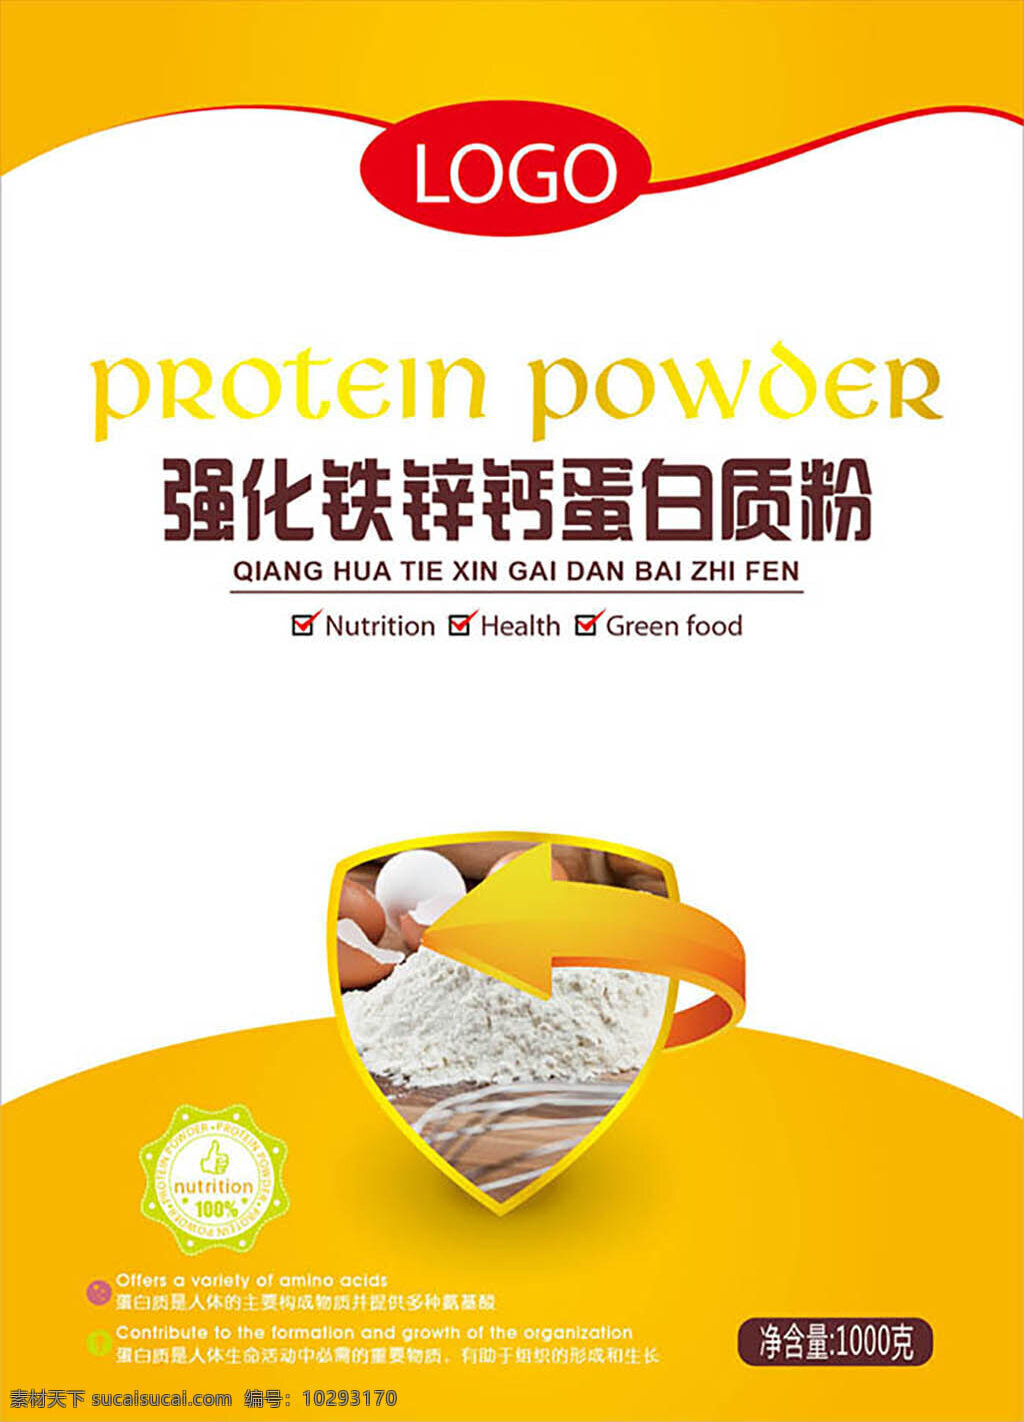 食品海报设计 补品海报设计 蛋白质粉海报 商品标签设计 商标设计 简约海报设计 海报素材 白色